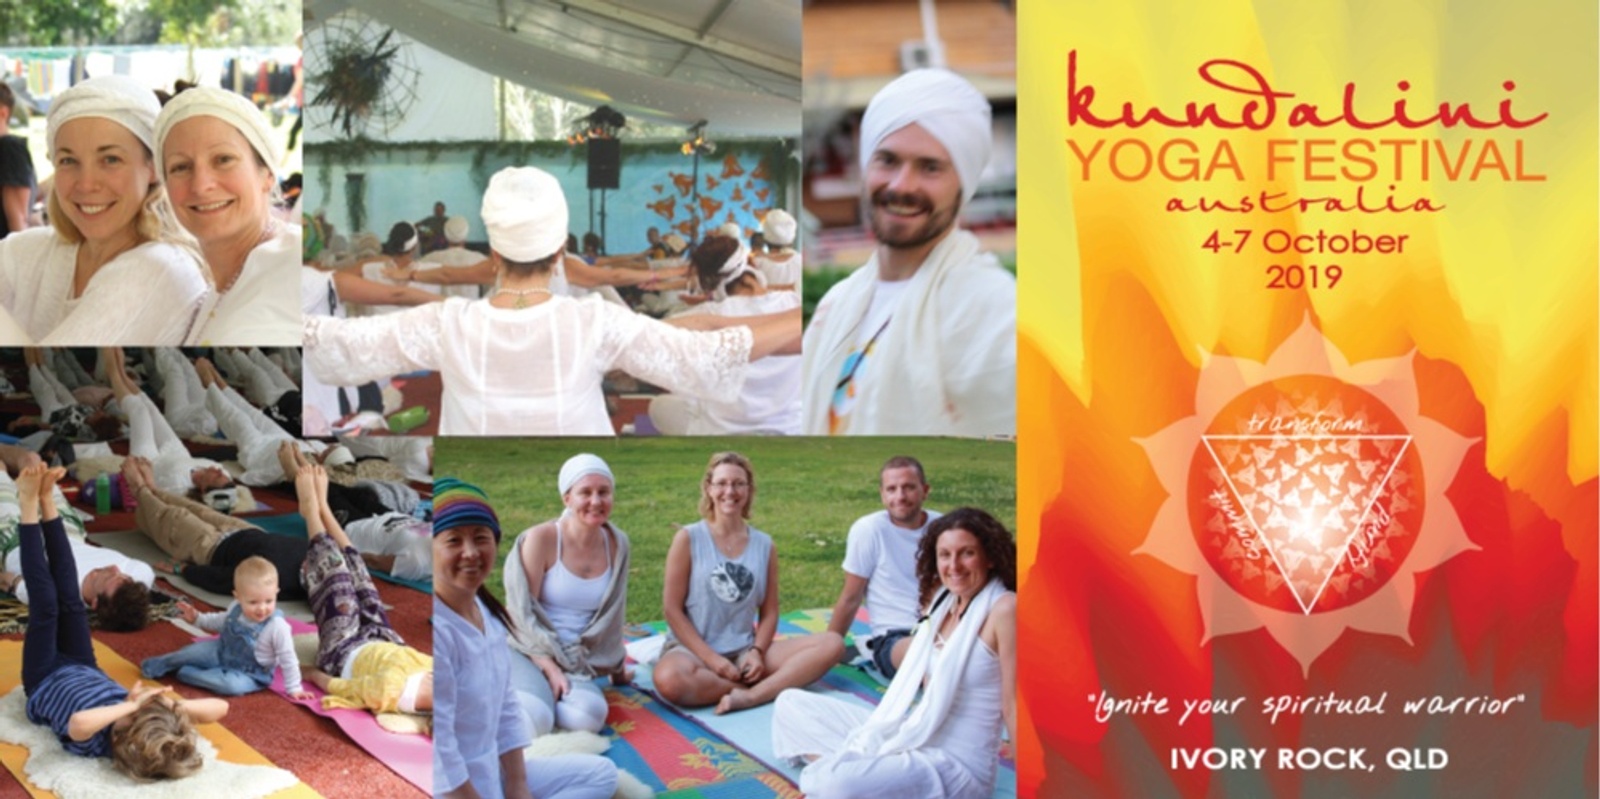 Banner image for Kundalini Yoga Festival Australia 2019